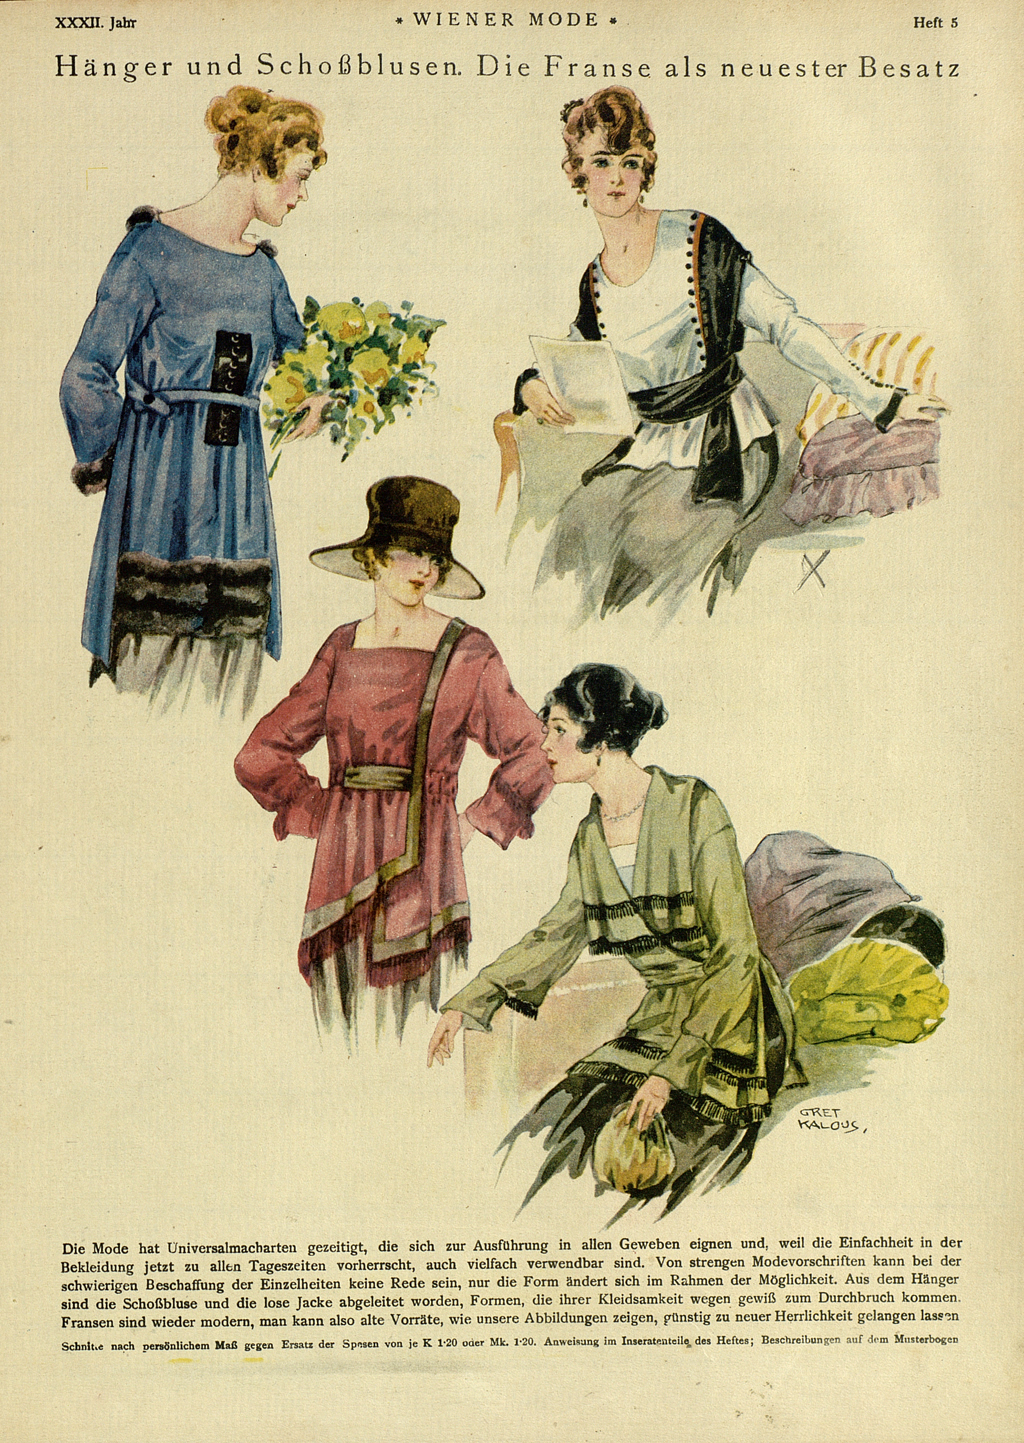 Seite aus "Wiener Mode", Abbildung mit vier Frauen in modischen Hängern und Schoßblusen. 